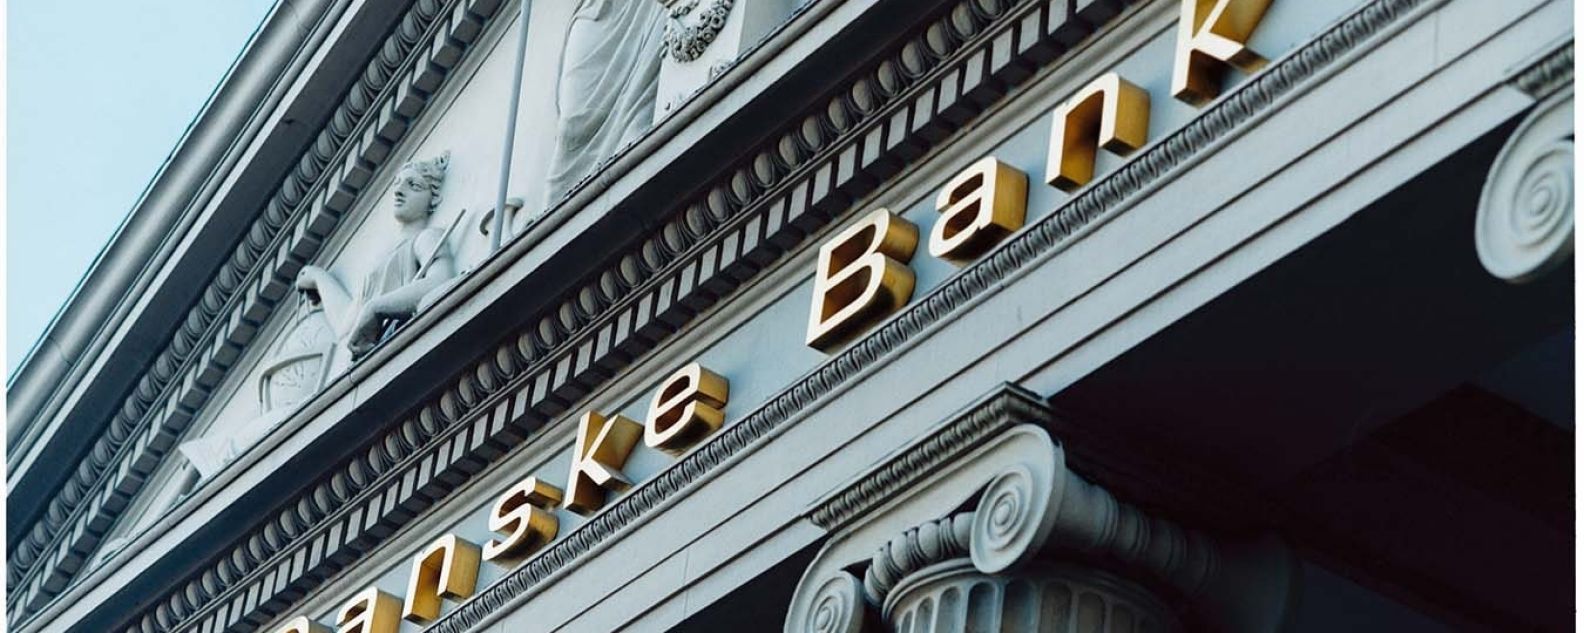 Fachada del edificio con columnas de la oficina de Danske Bank con el logotipo de Danske Bank visible